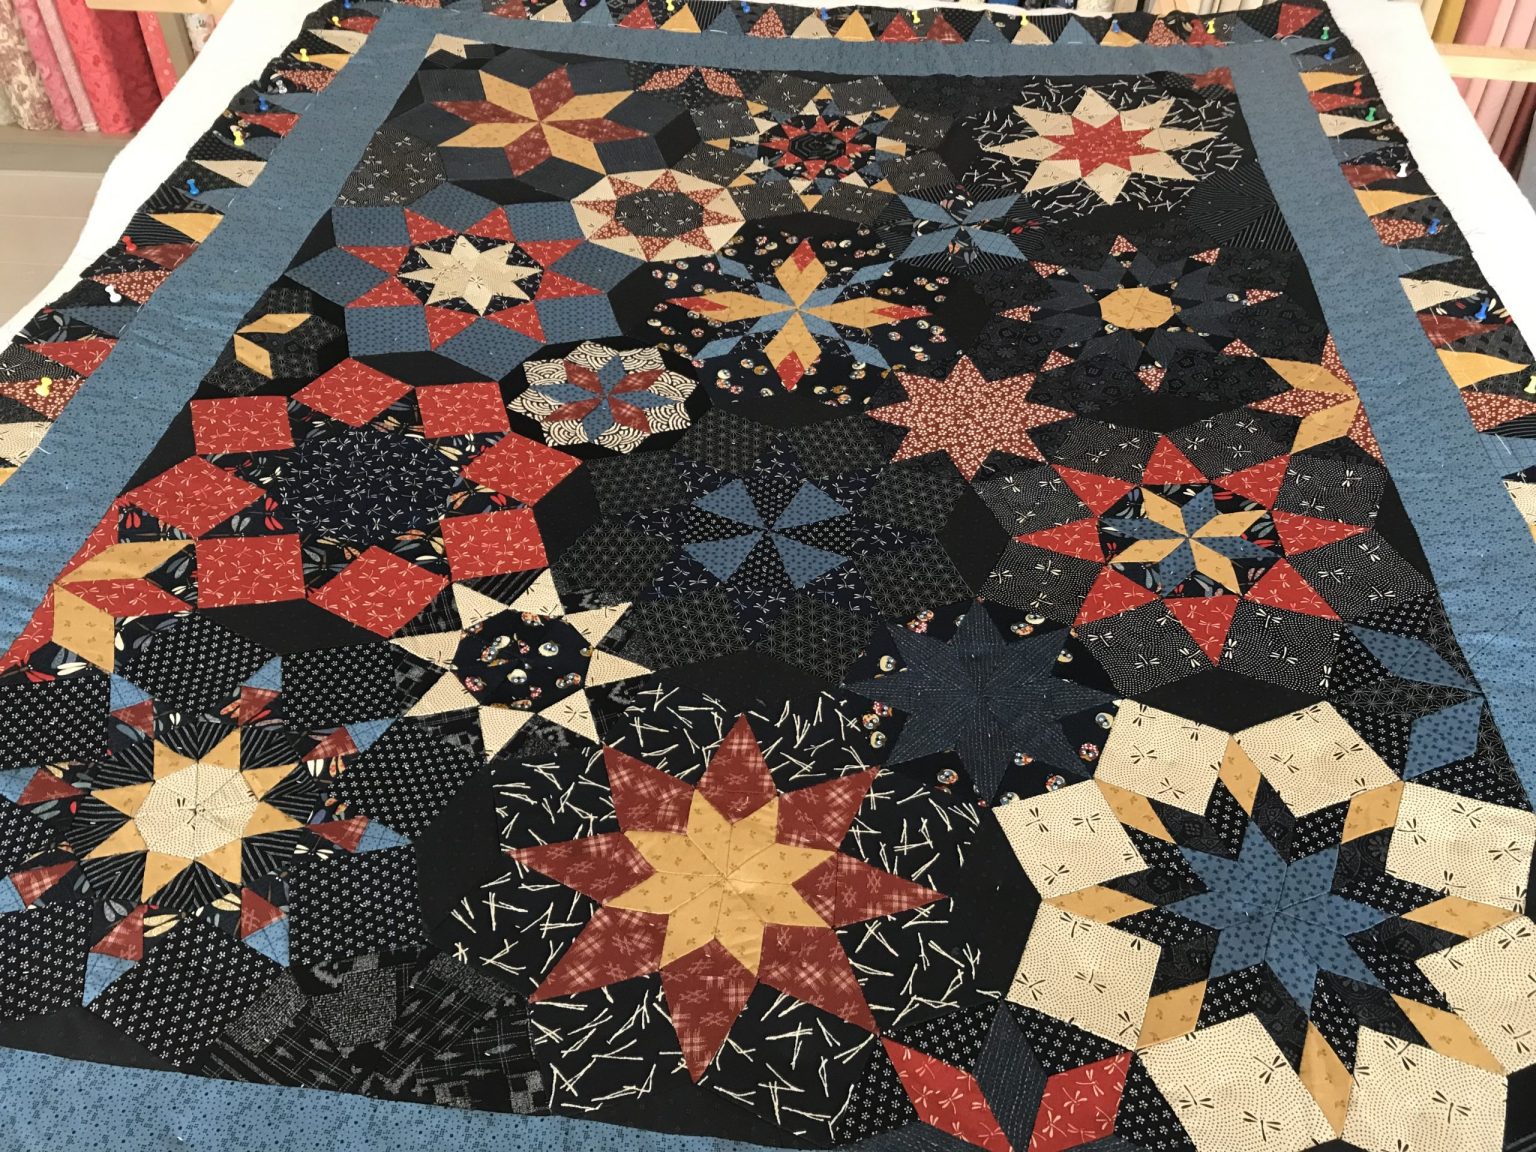 Tijdens een vakantie in Limburg kocht Sonja het patroon en de stofjes van deze quilt bij Marij in Beek. Vandaag hebben we hem samen gedubbeld. Wat een prachtige kleureffecten heeft deze quilt. Heel spannend verdeeld.....